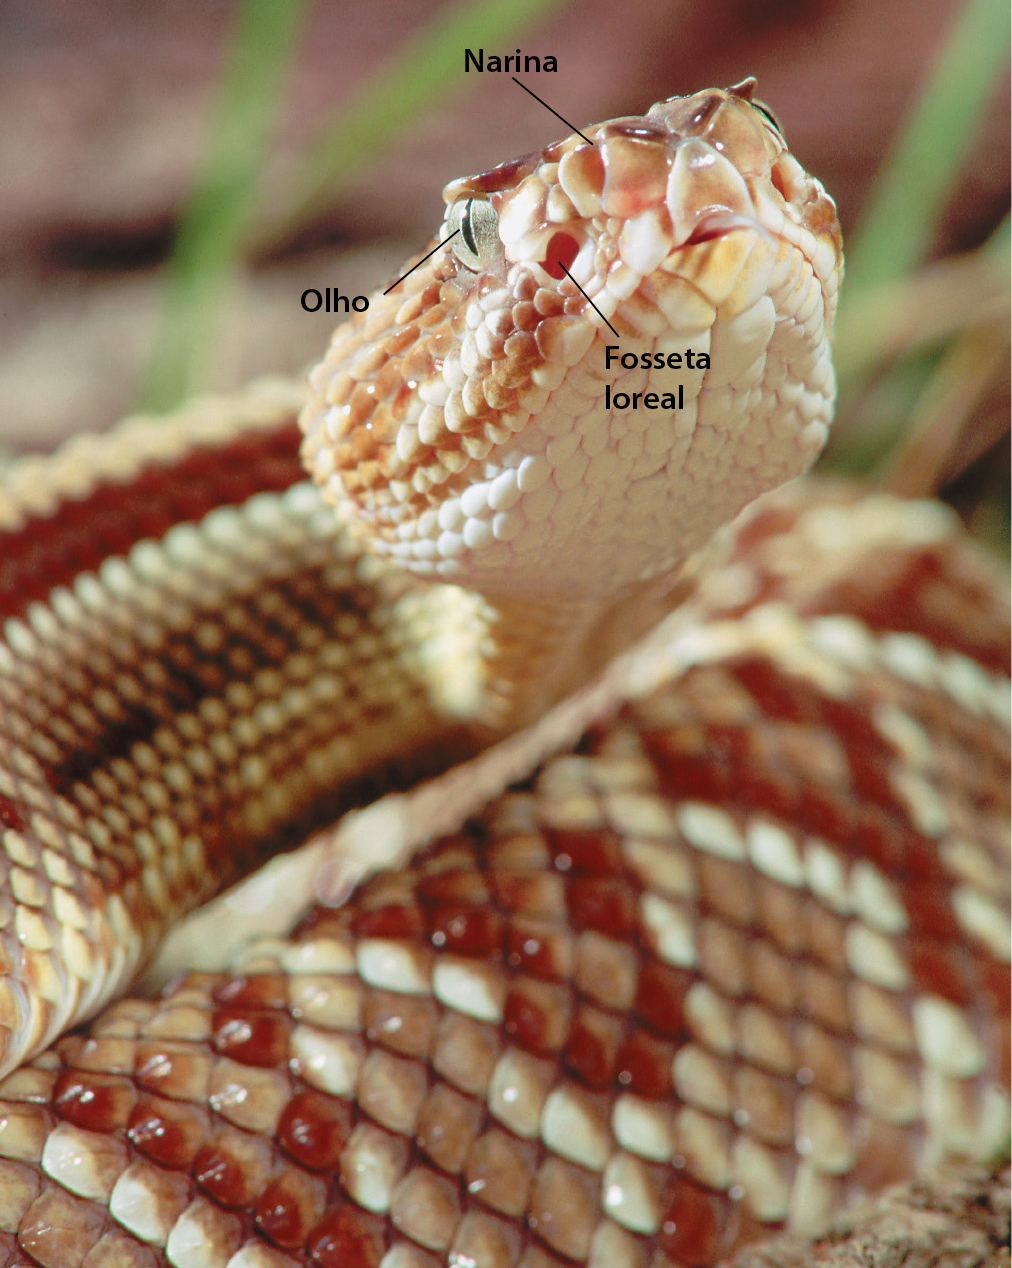 Fotografia. Detalhe da cabeça de uma serpente, com escamas de cores branca, rosa e vermelho, indicando o olho, a narina e a fosseta loreal, orifício entre o olho e a narina.